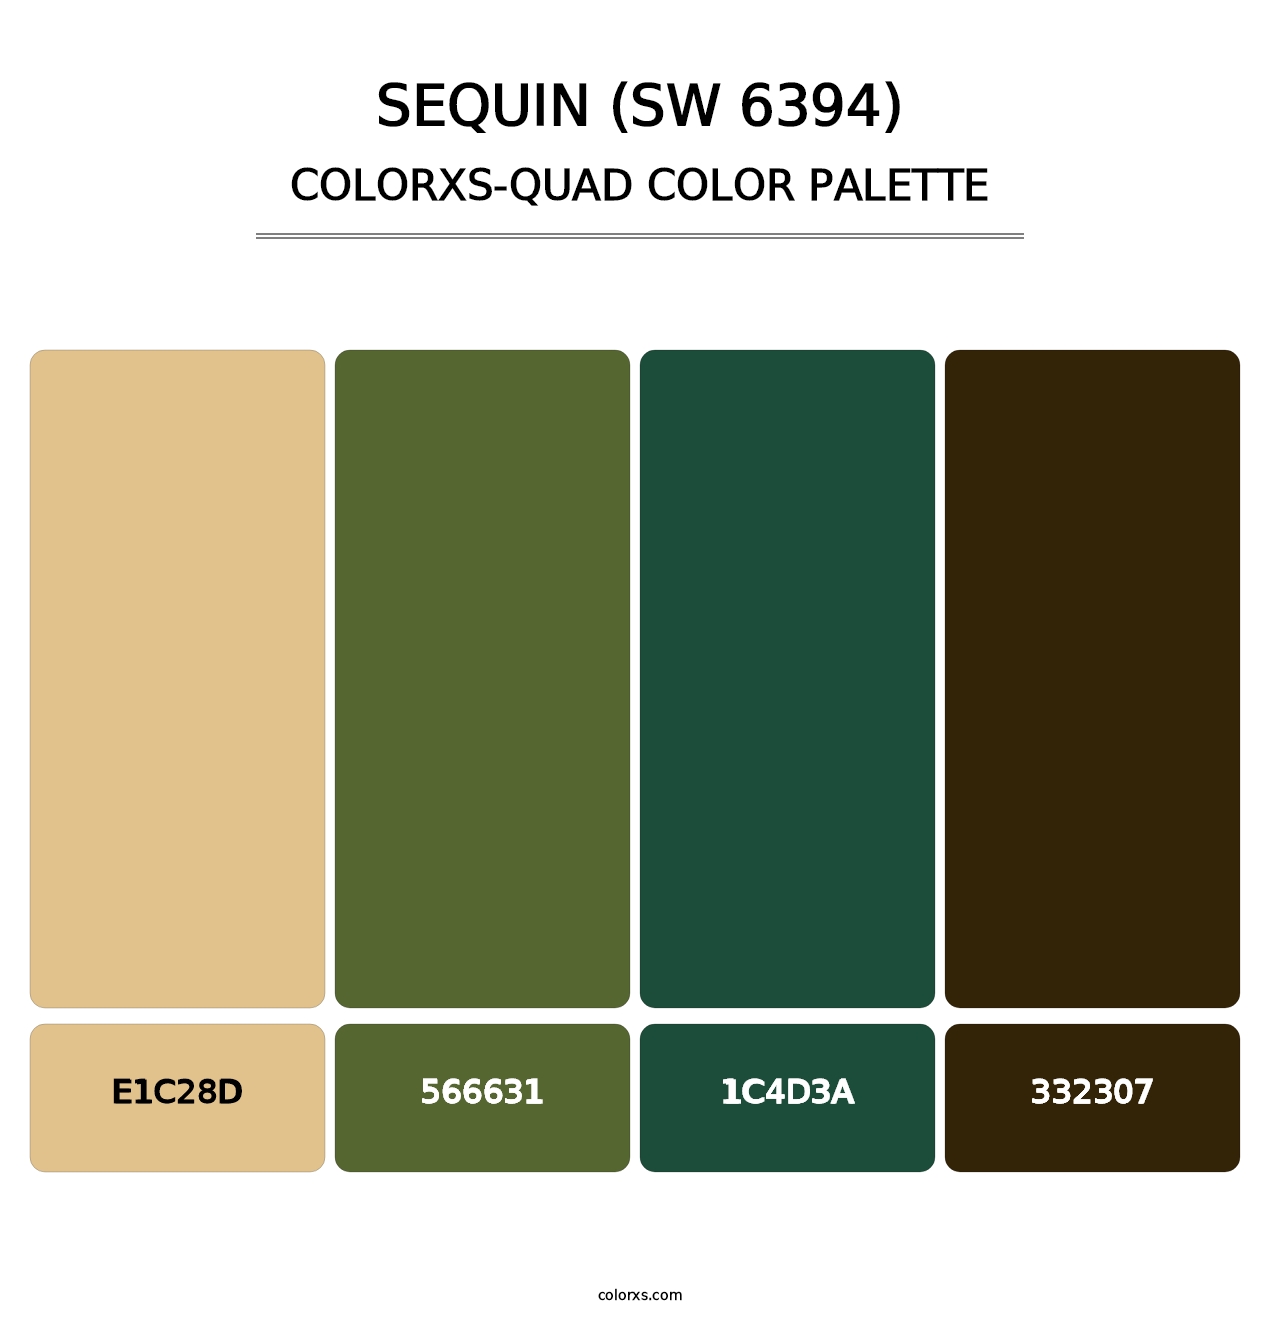 Sequin (SW 6394) - Colorxs Quad Palette